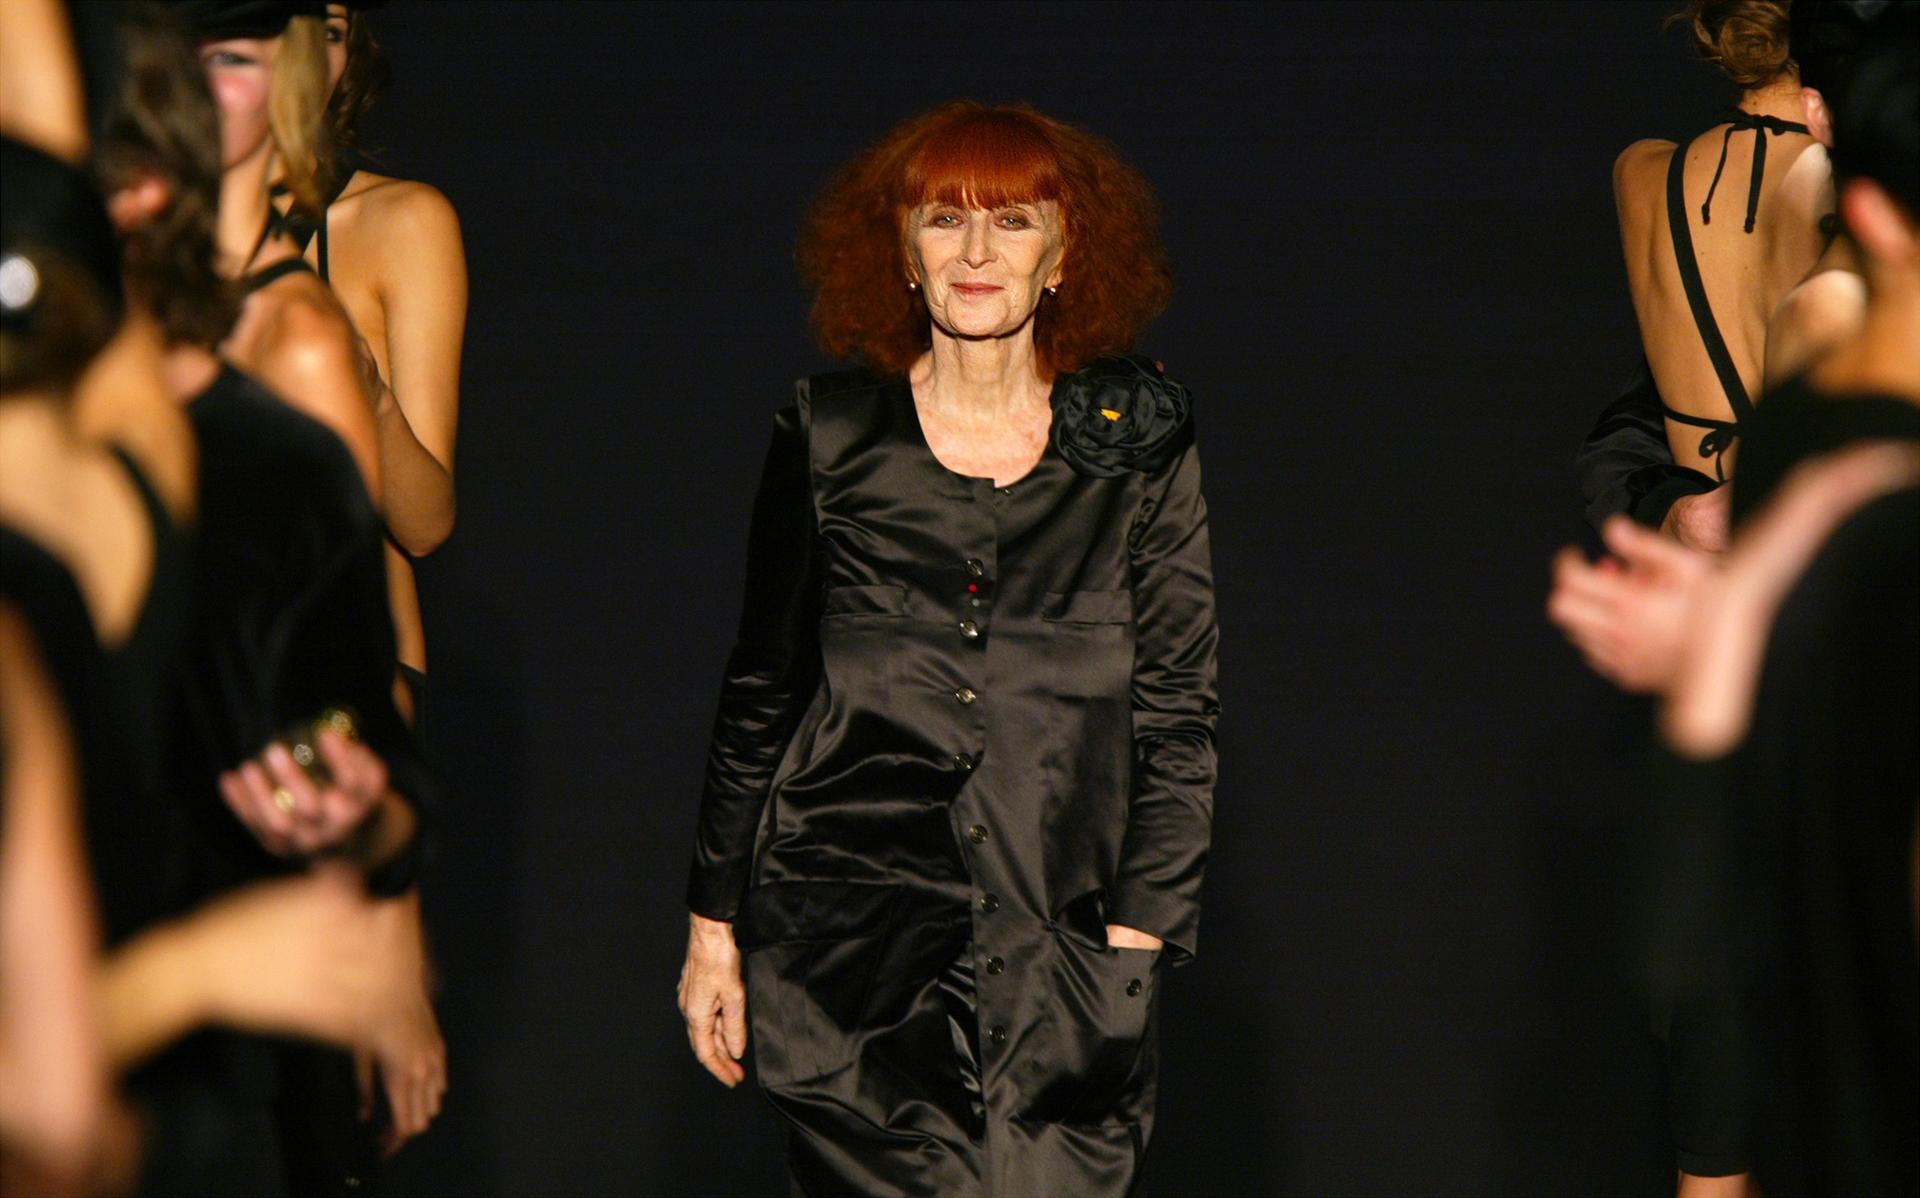 French designer Sonia Rykiel